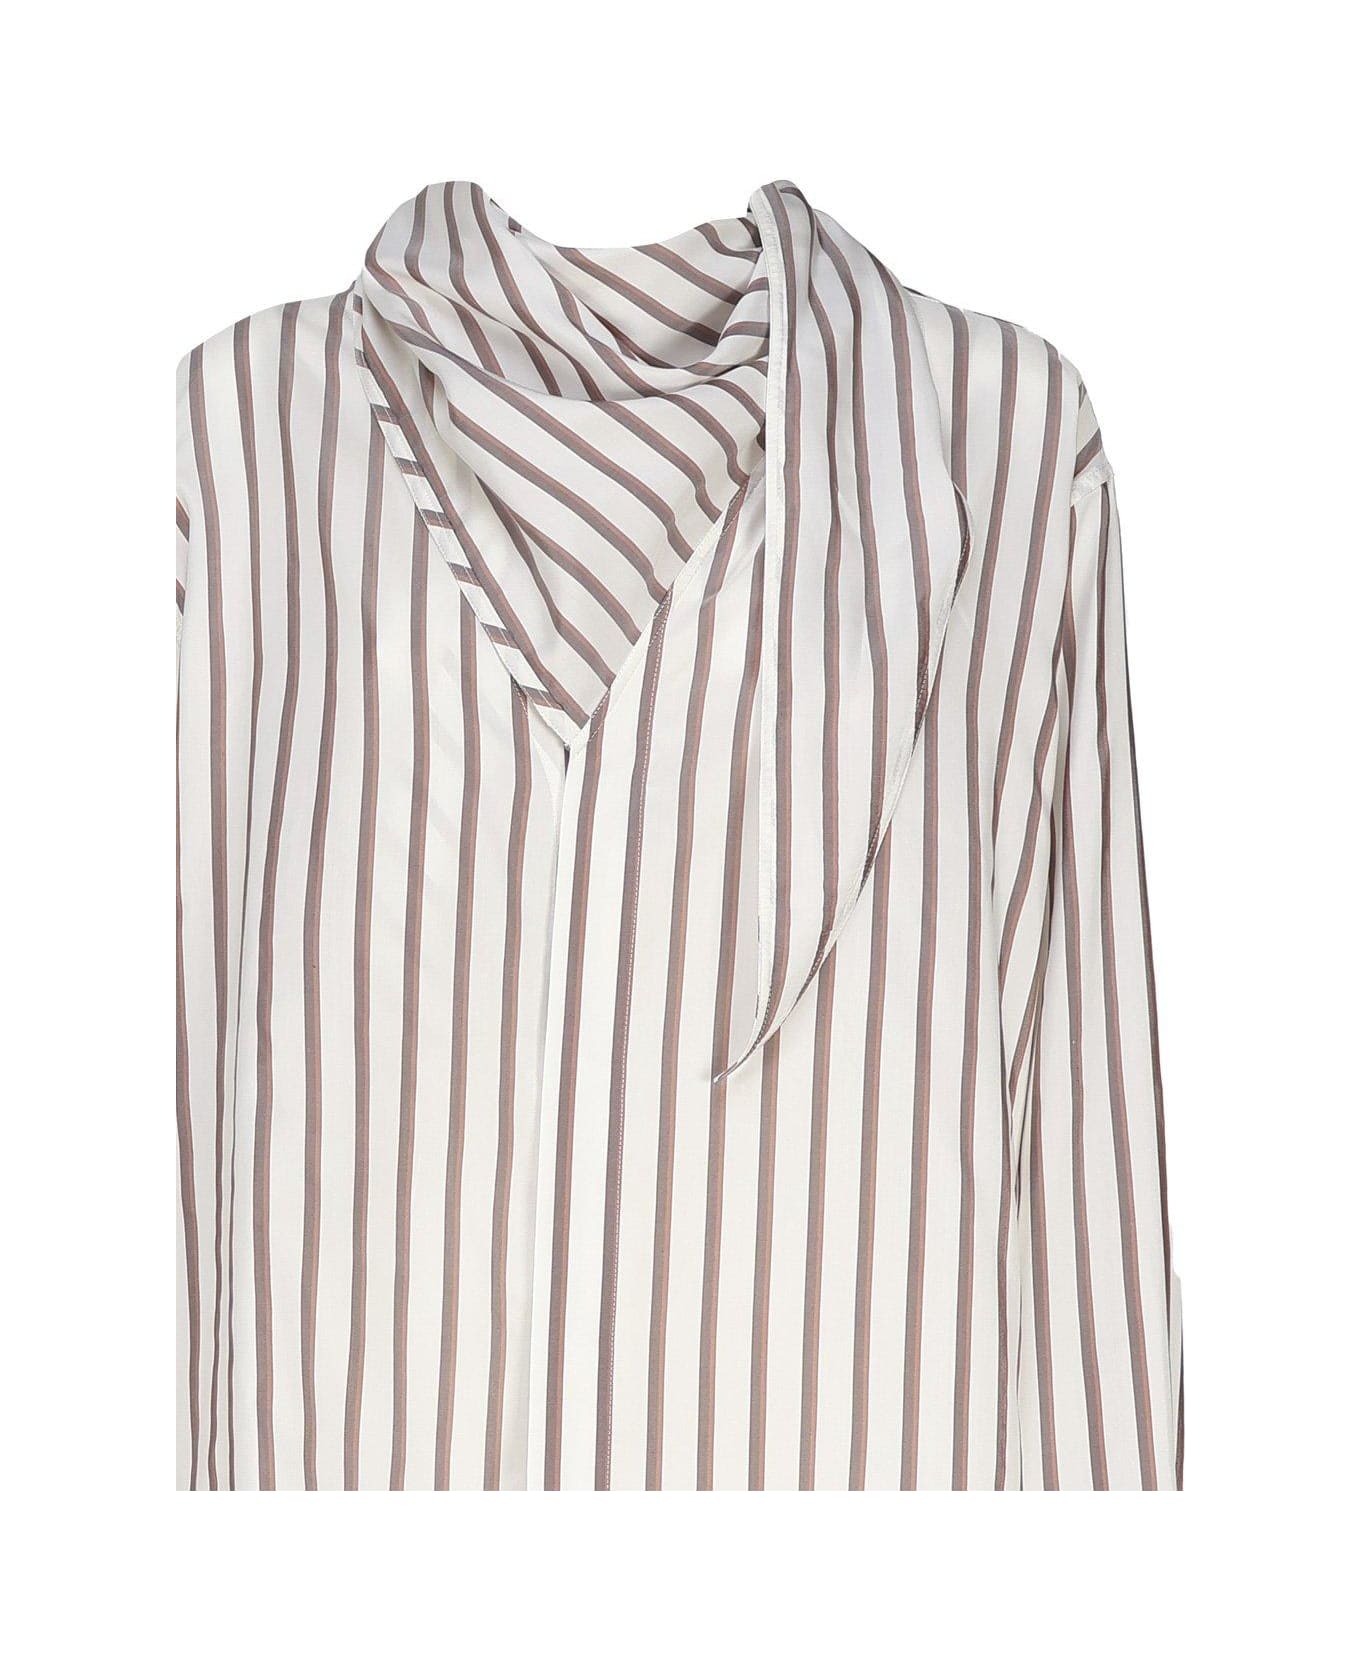 Bottega Veneta Striped Shirt - White, brown, chestnut